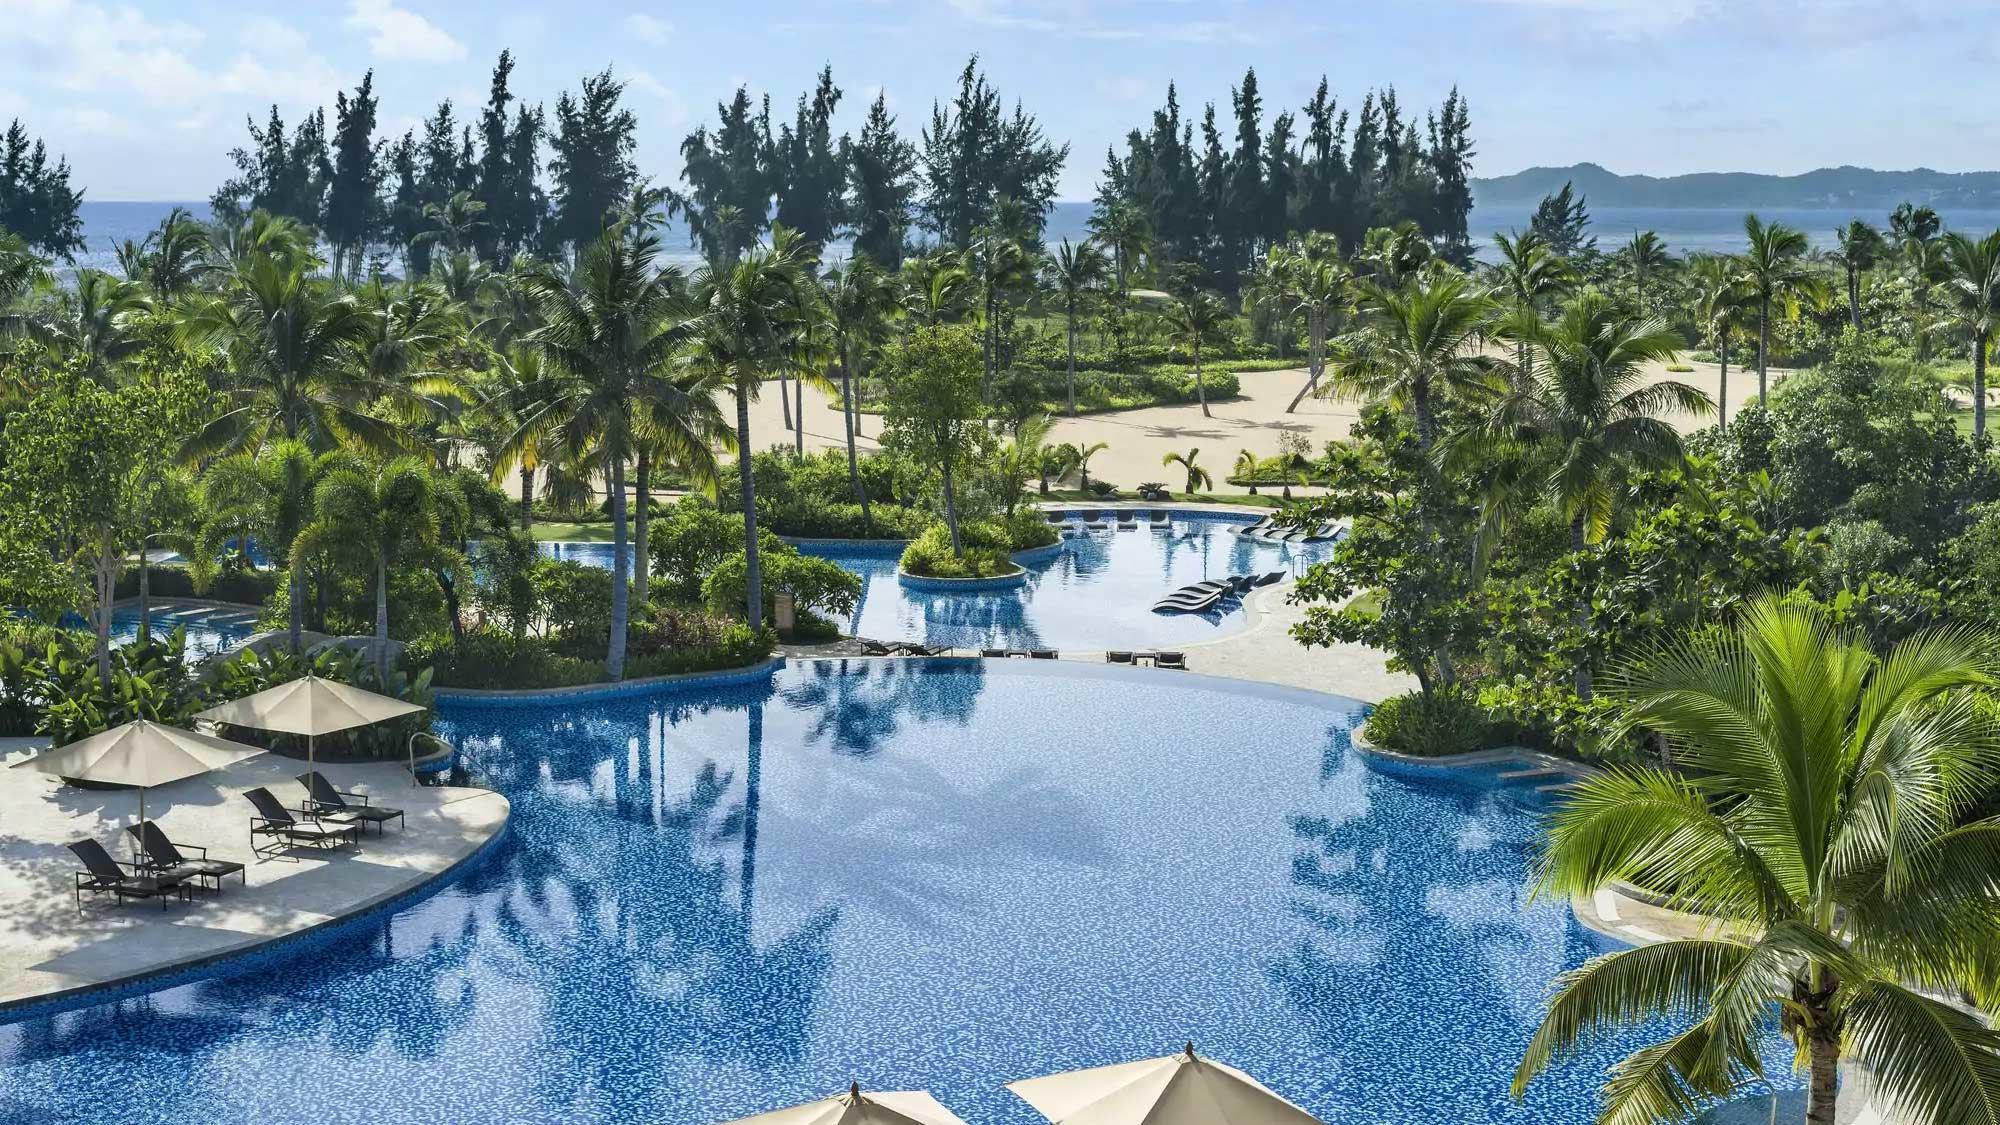 The Shangri-La Sanya Resort and Spa's beautiful main pool within amazing China.